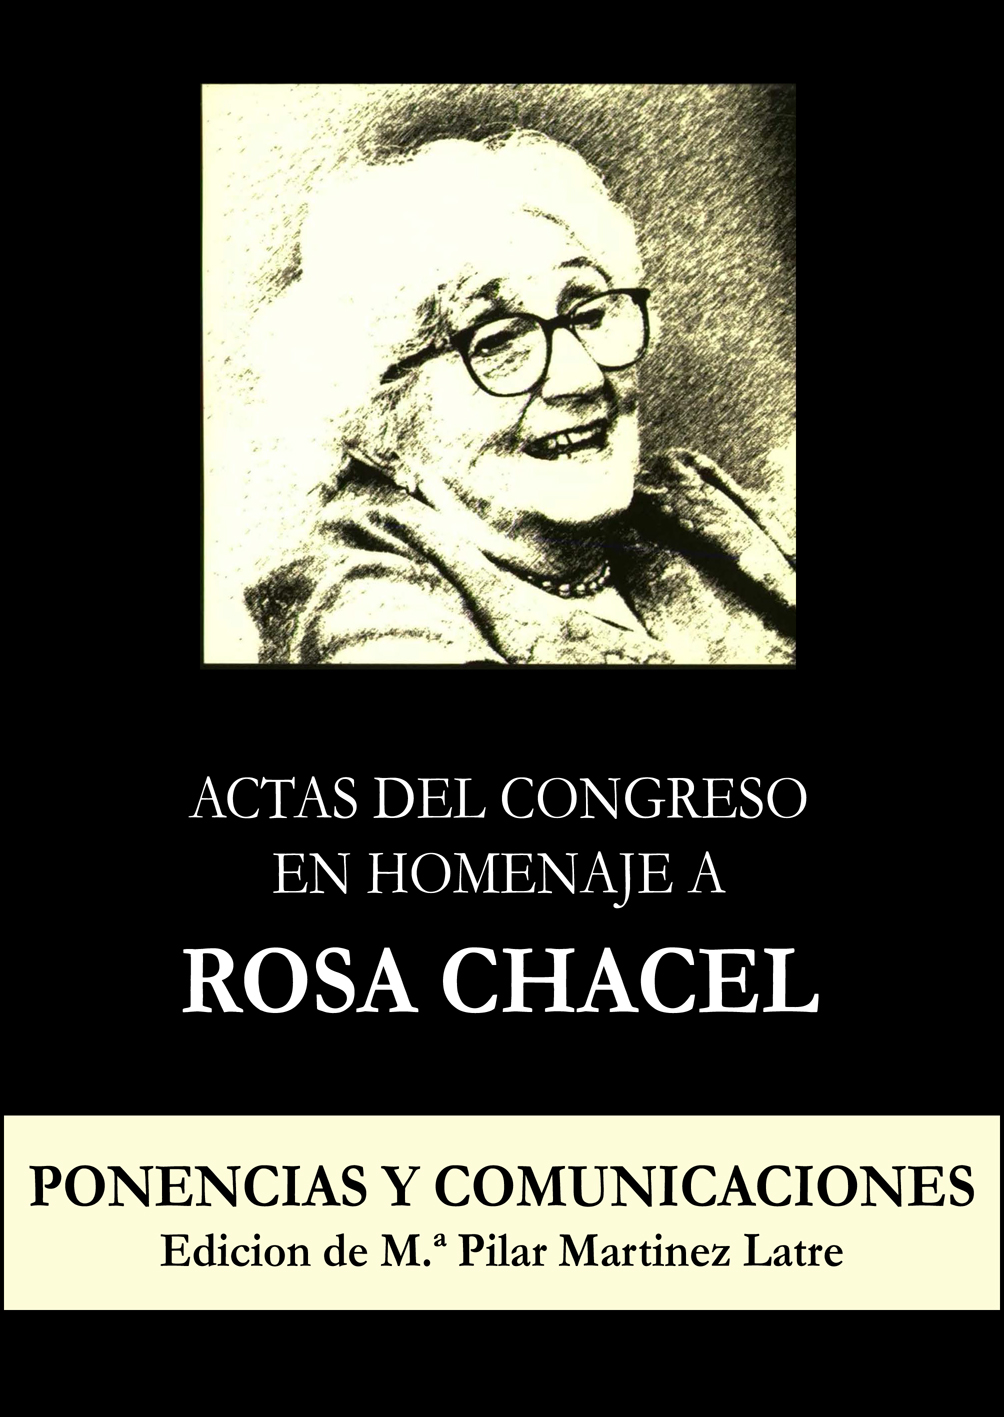 Imagen de portada del libro Actas del congreso en homenaje a Rosa Chacel